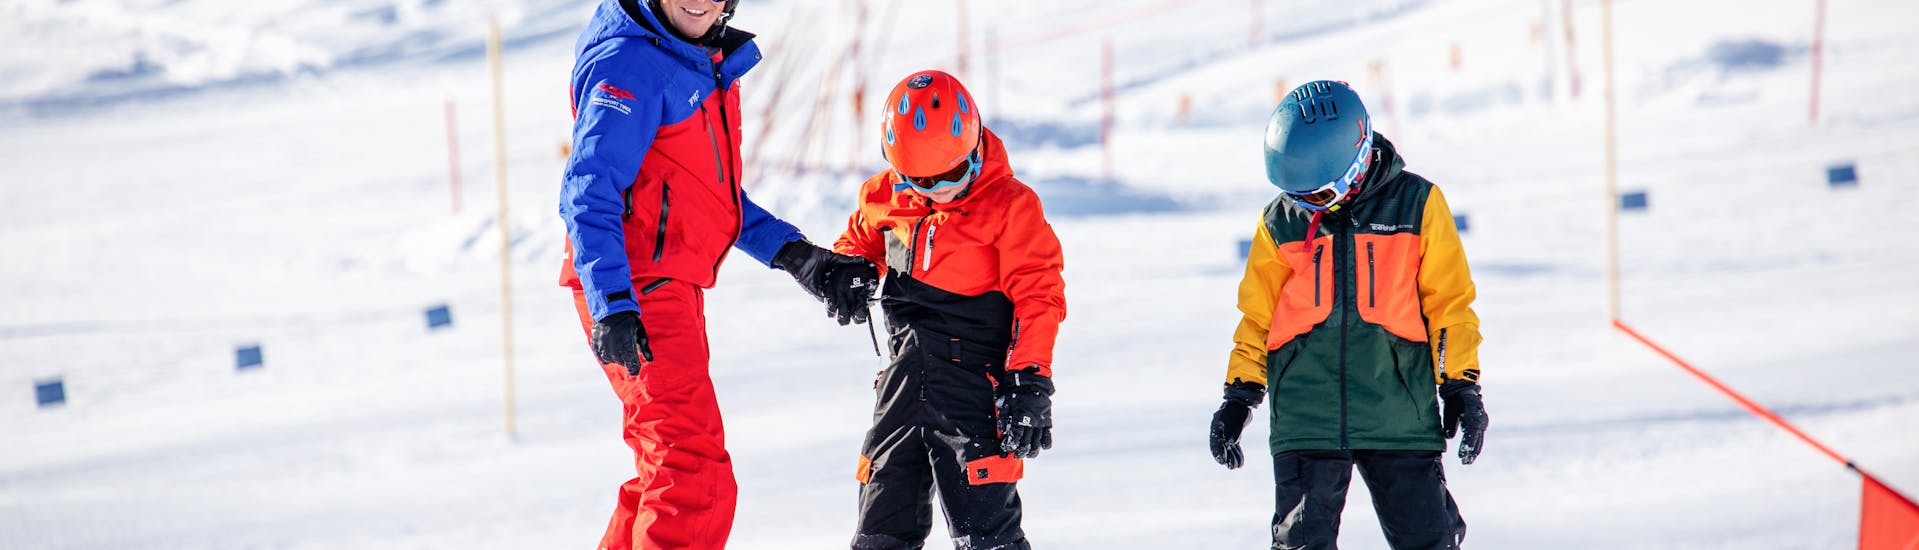 Un snowboarder fait un saut sur la piste lors d'un cours de snowboard pour enfants et adultes - niveau expérimenté.